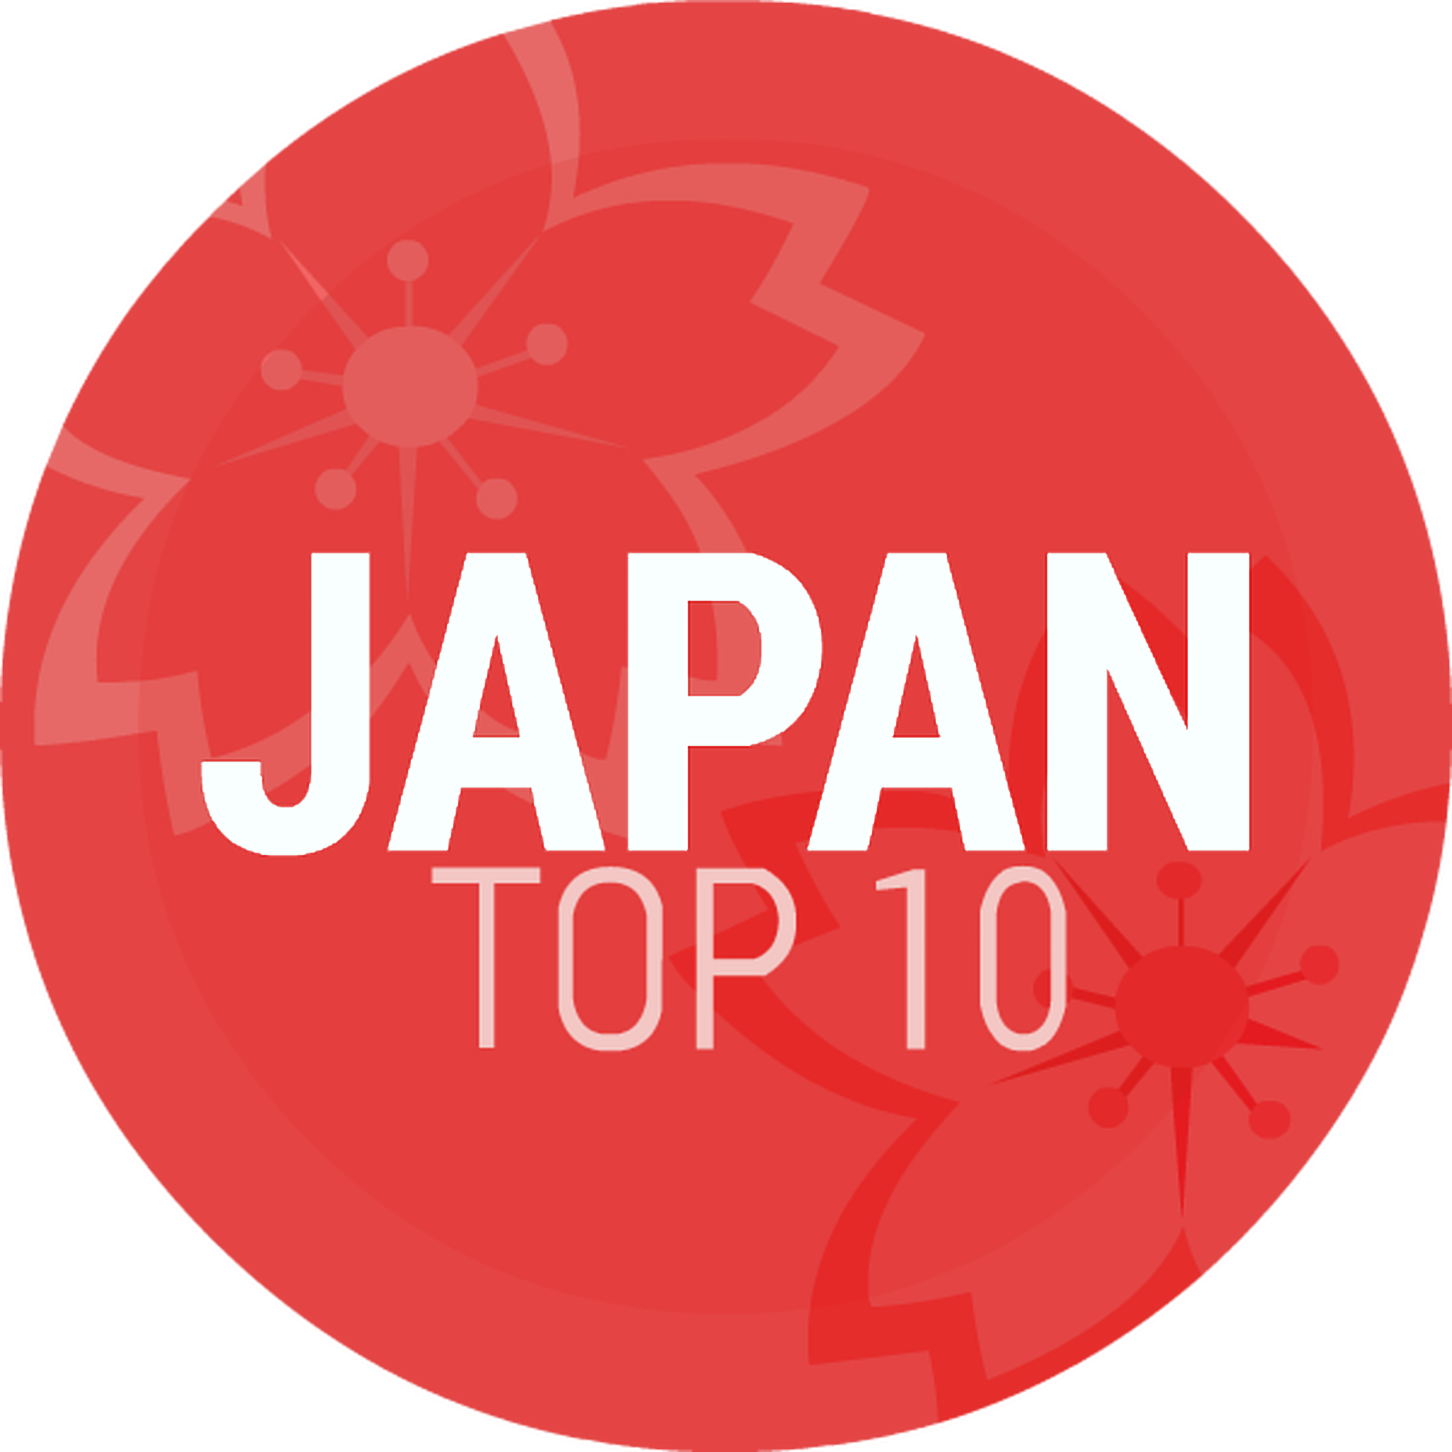 Episode 167: Japan Top 10 December Special #5: Top 50 Most Popular J-Pop Songs Of 2016